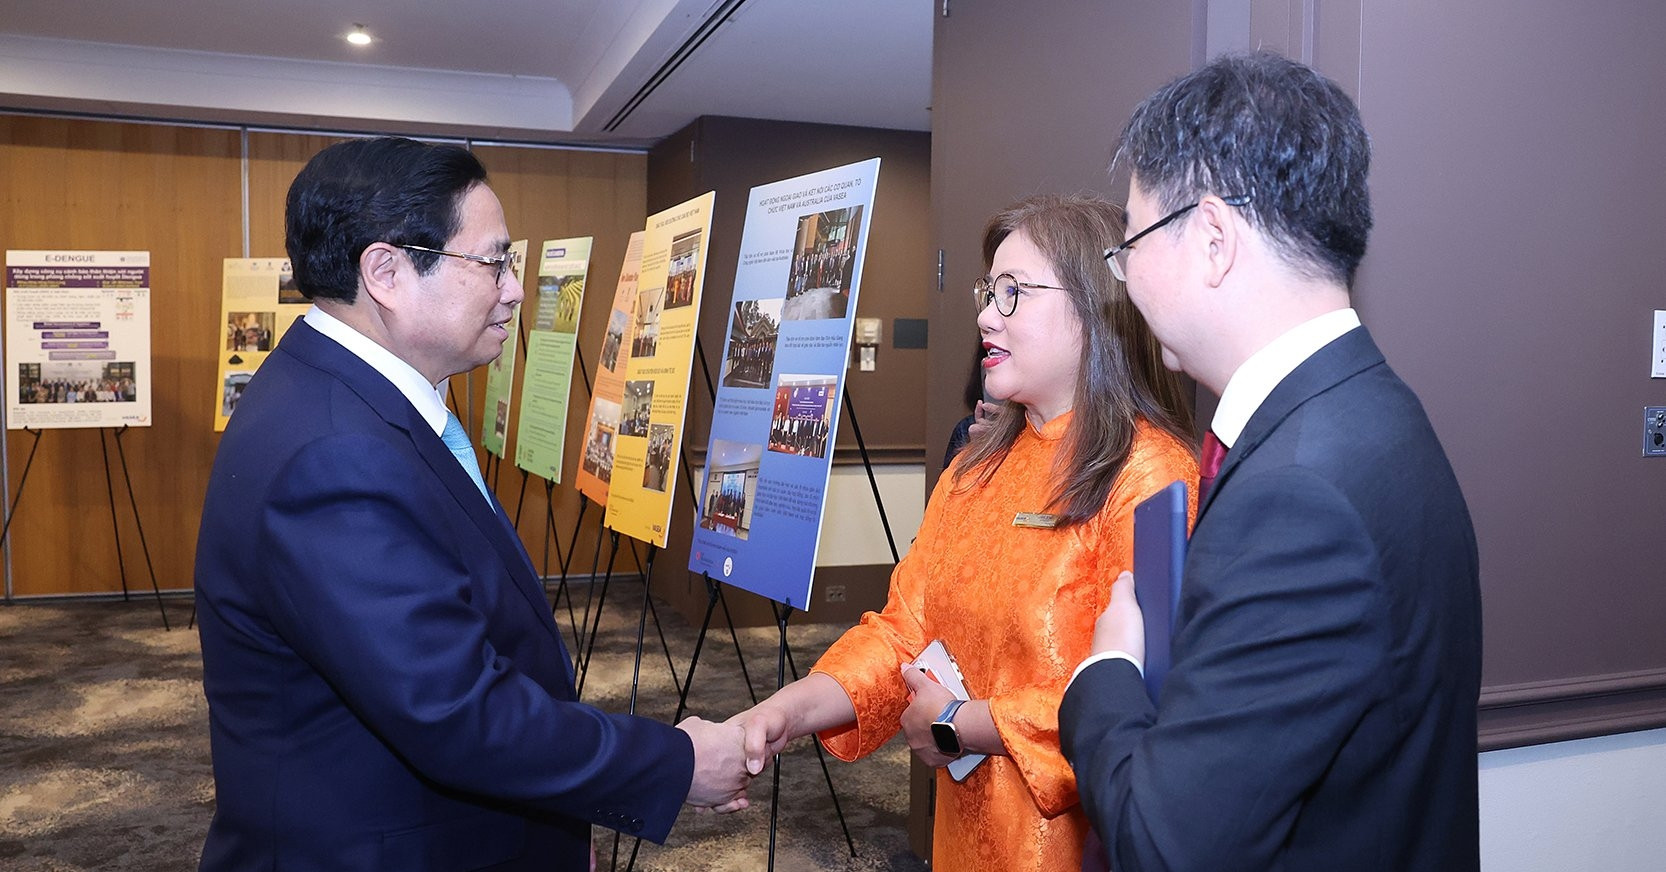 
Thủ tướng vui mừng chứng kiến cộng đồng người Việt tại Australia, đặc biệt là cộng đồng trí thức và chuyên gia, ngày càng đoàn kết, gắn bó và có nhiều hoạt động thiết thực hướng về quê hương, đất nước - Ảnh: VP/Nhật Bắc
